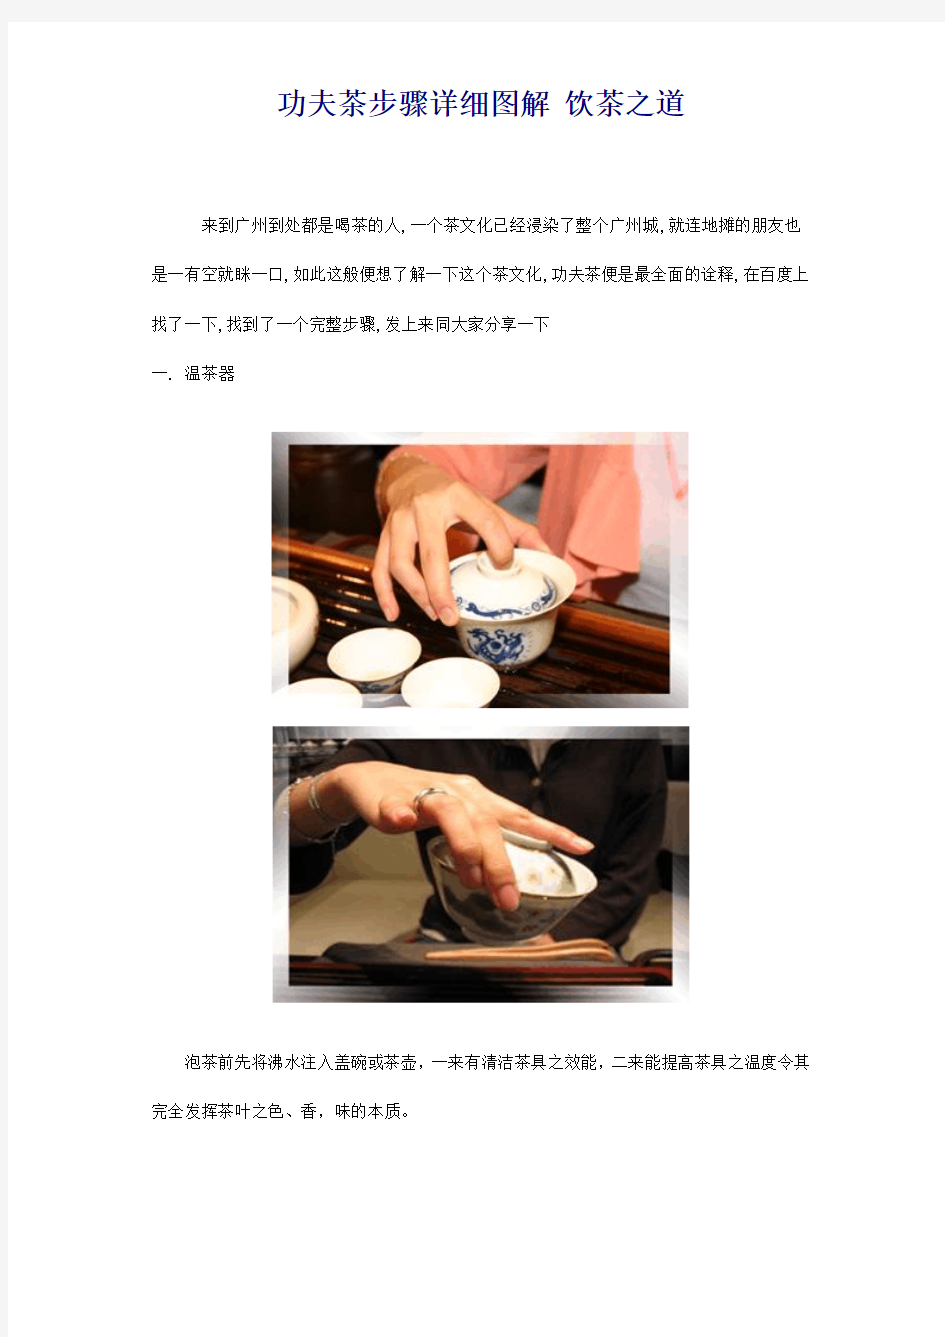 福建铁观音功夫茶步骤详细图解_饮茶之道